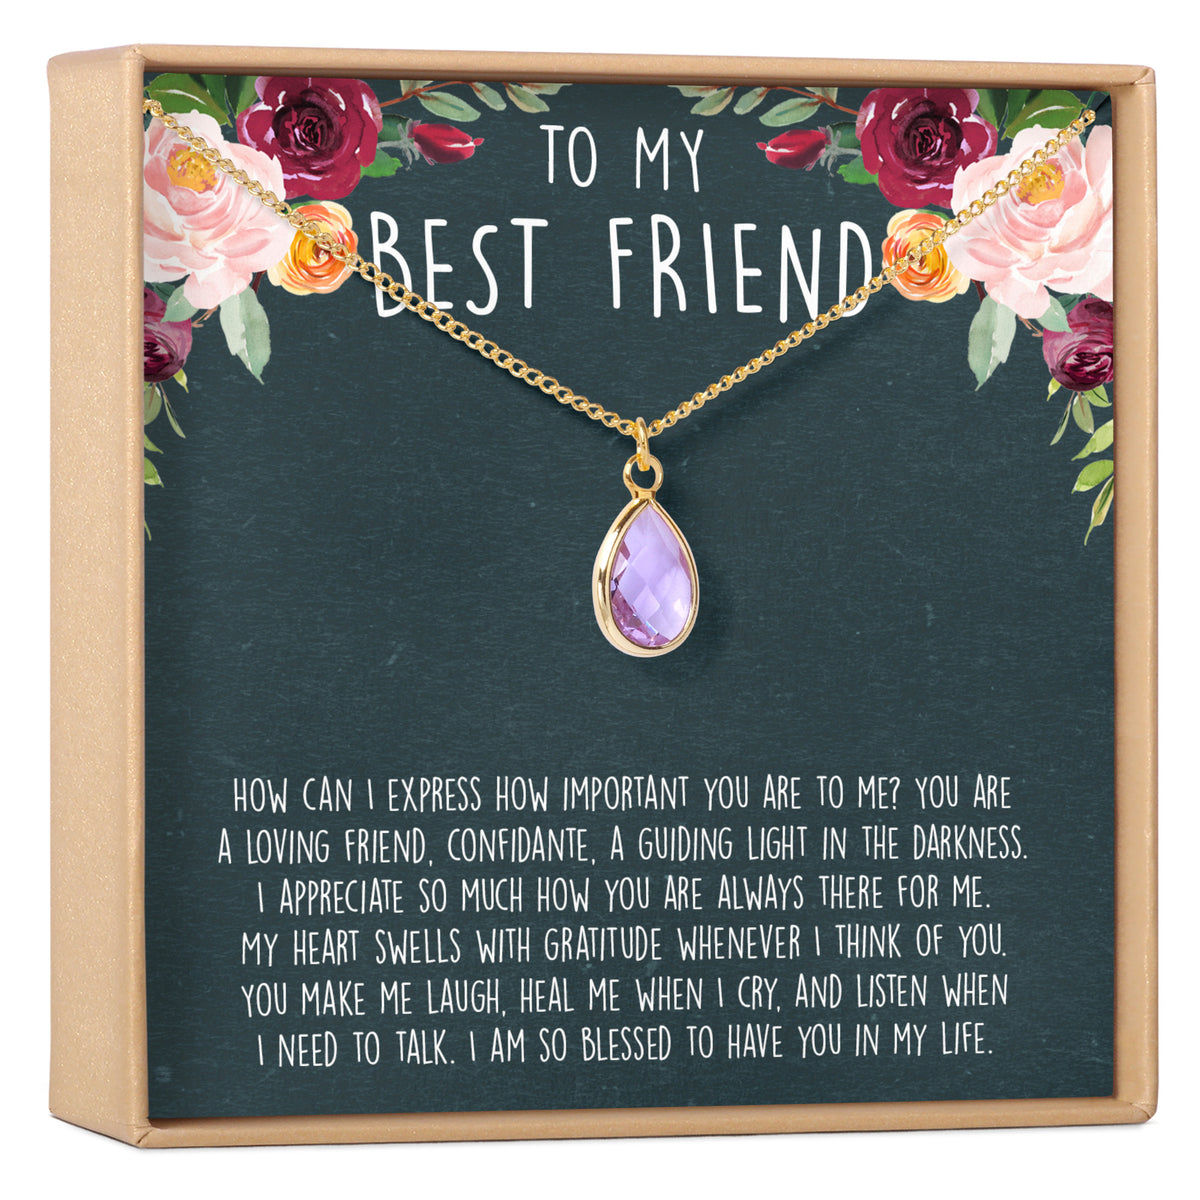 Best Friends Necklace